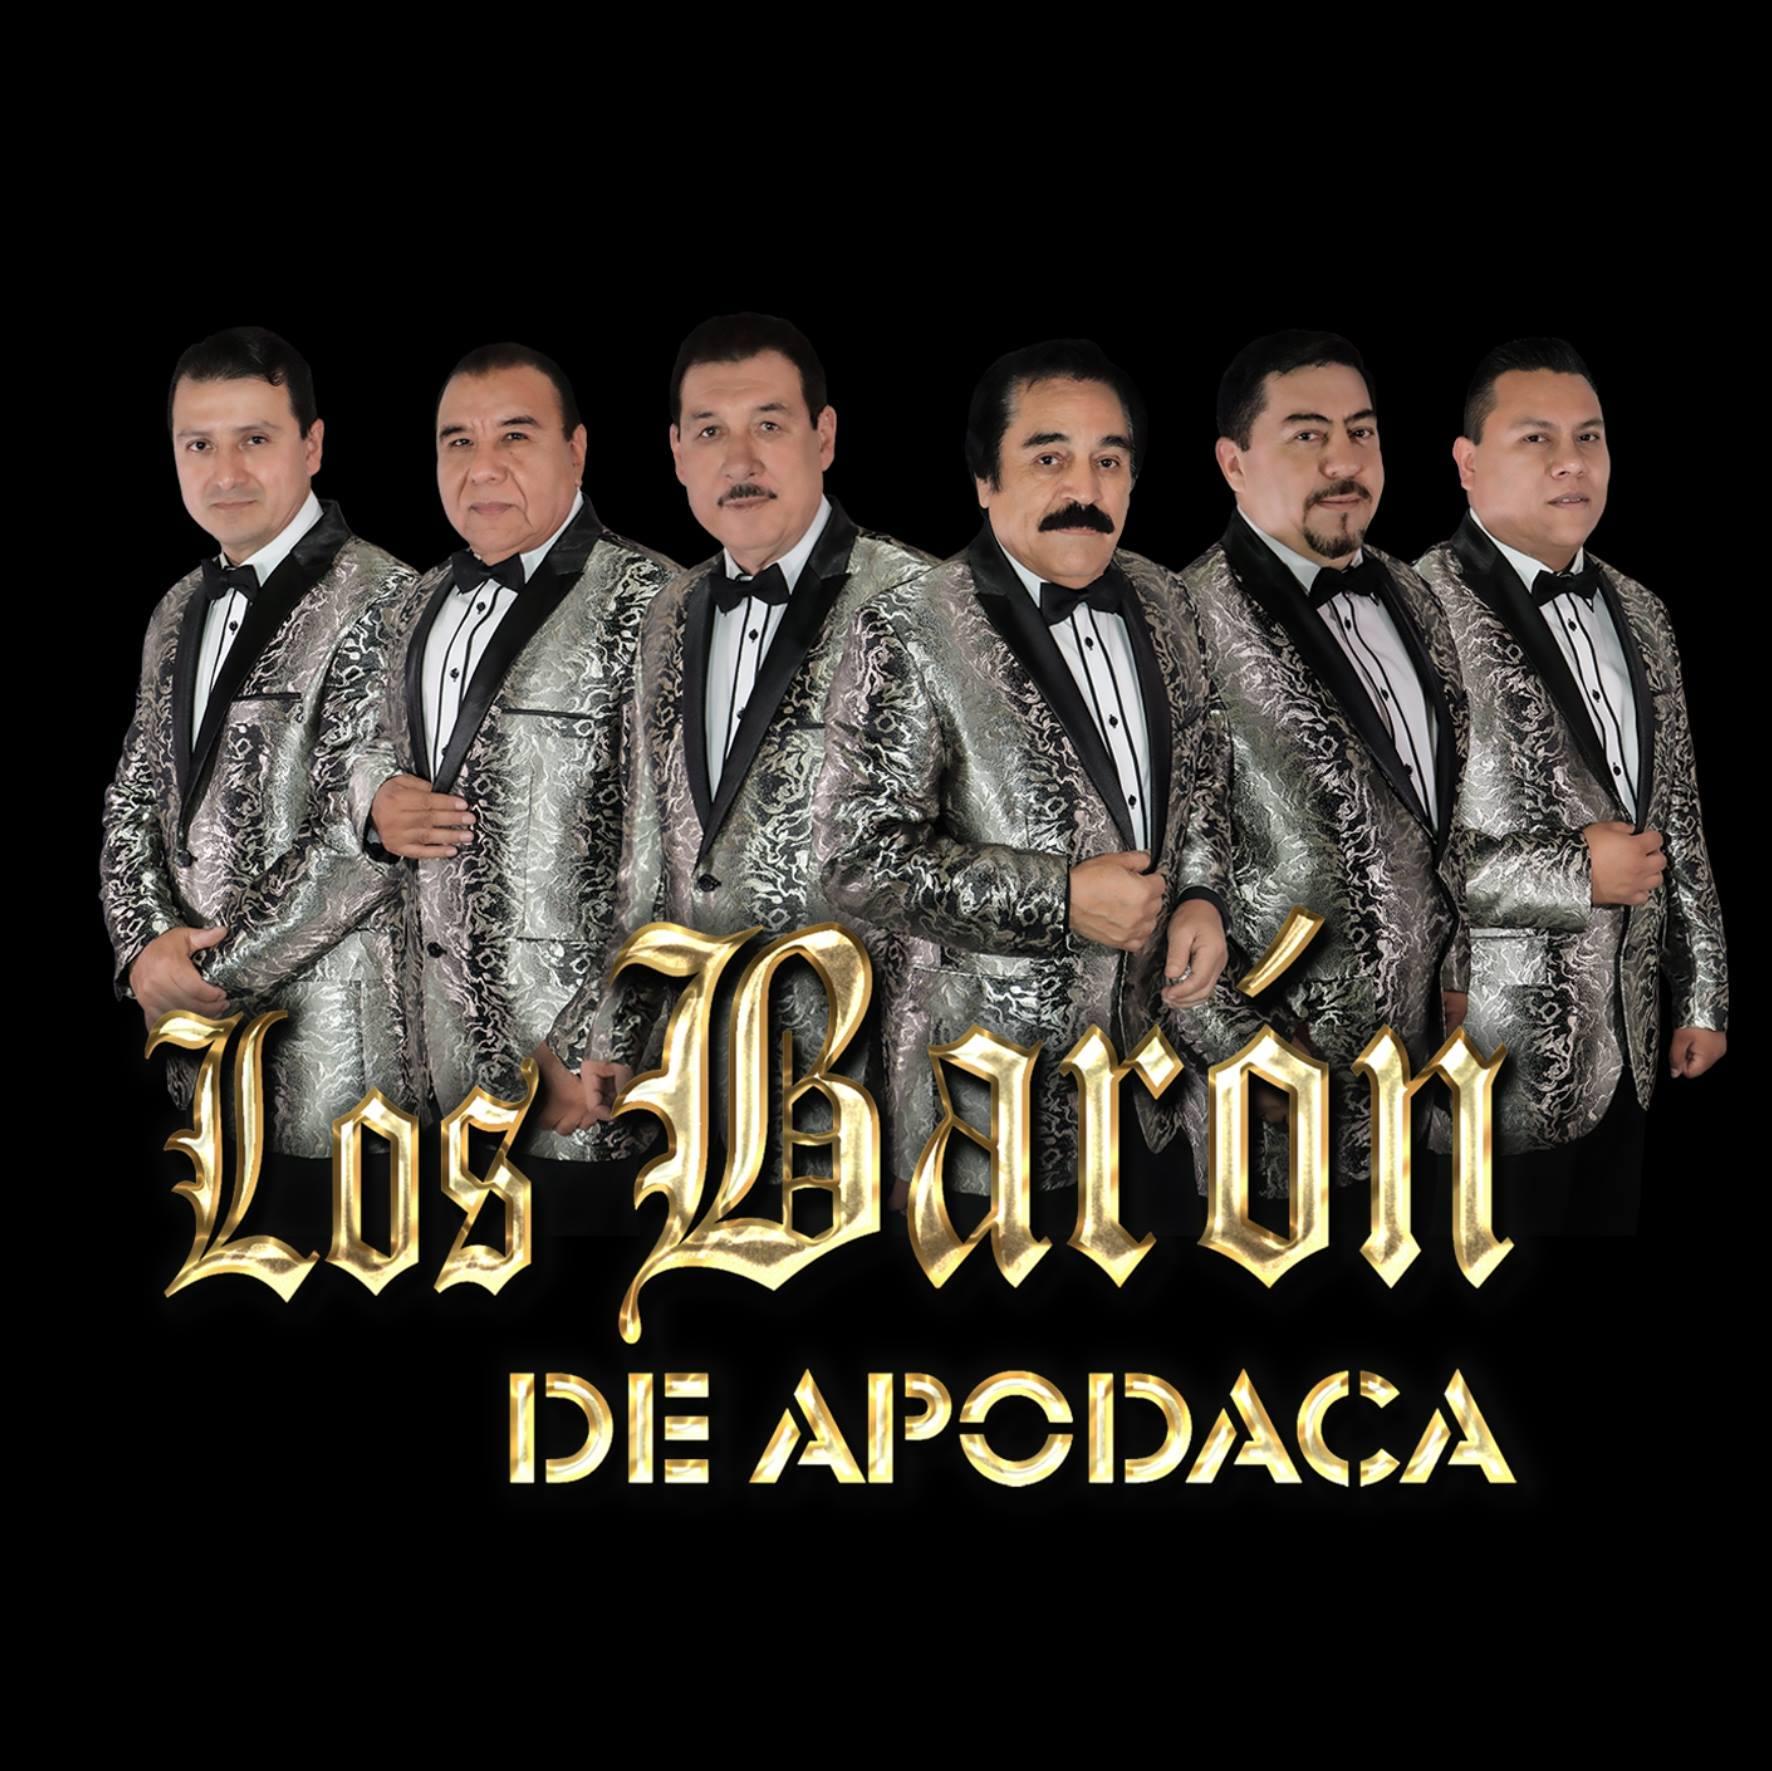 Los Baron De Apodaca at Club Carnaval